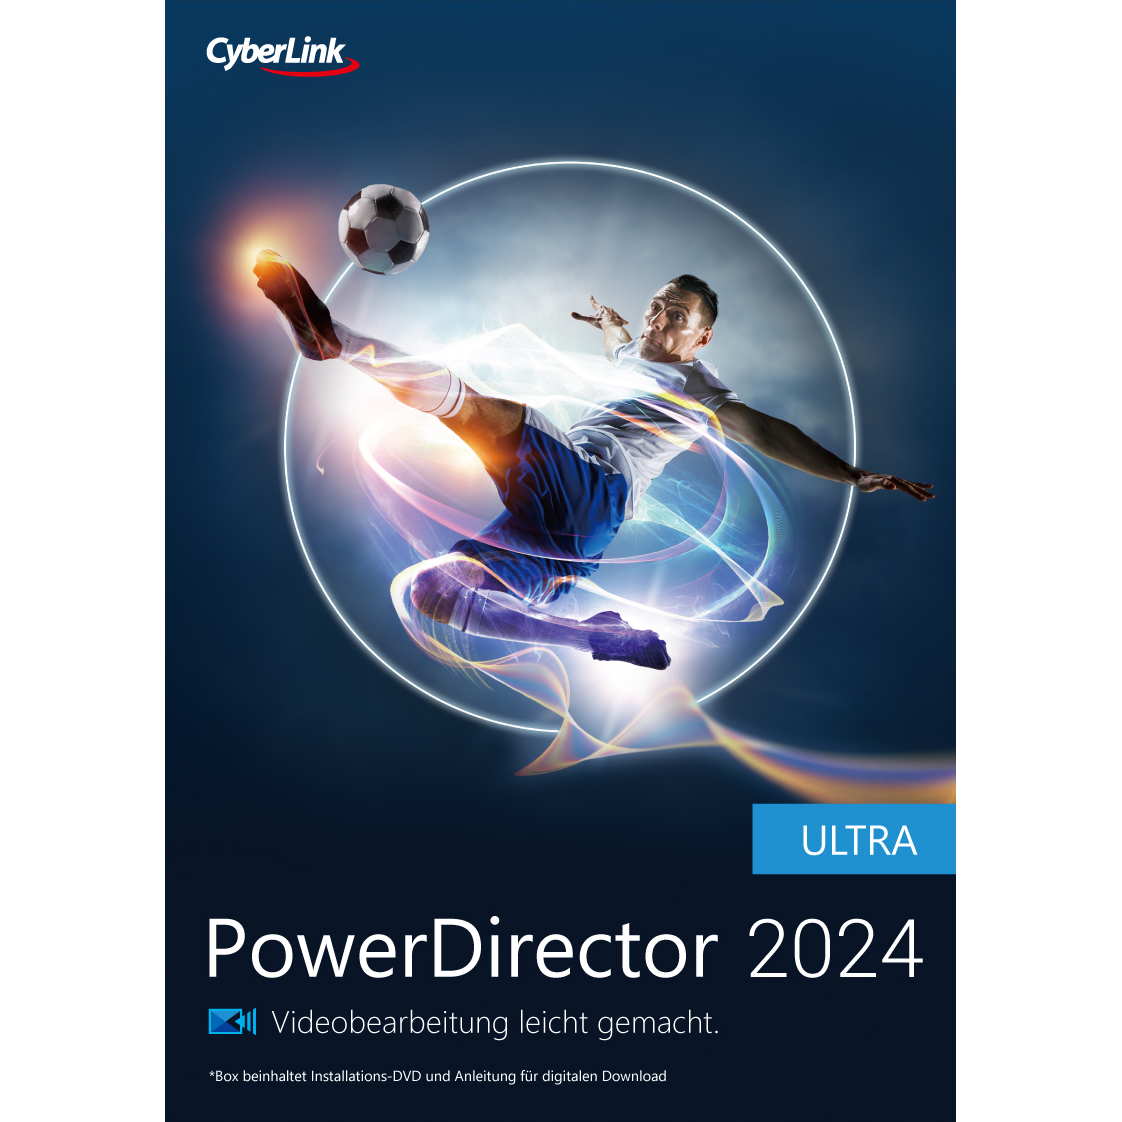 Cyberlink PowerDirector 2024 Ultra von Cyberlink